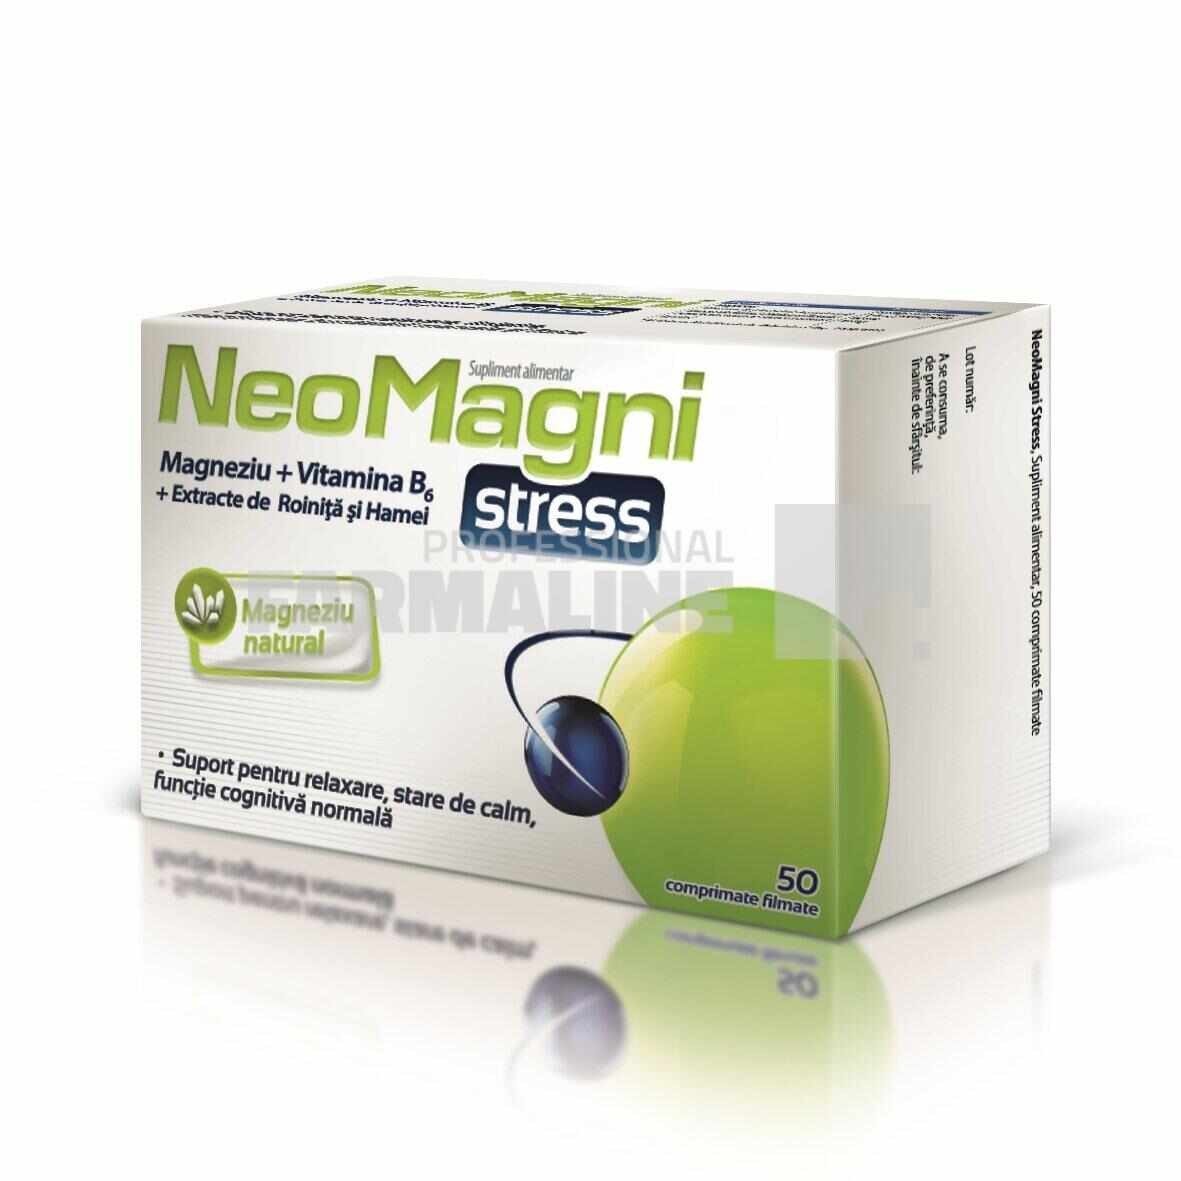 NeoMagni Stress 50 comprimate 